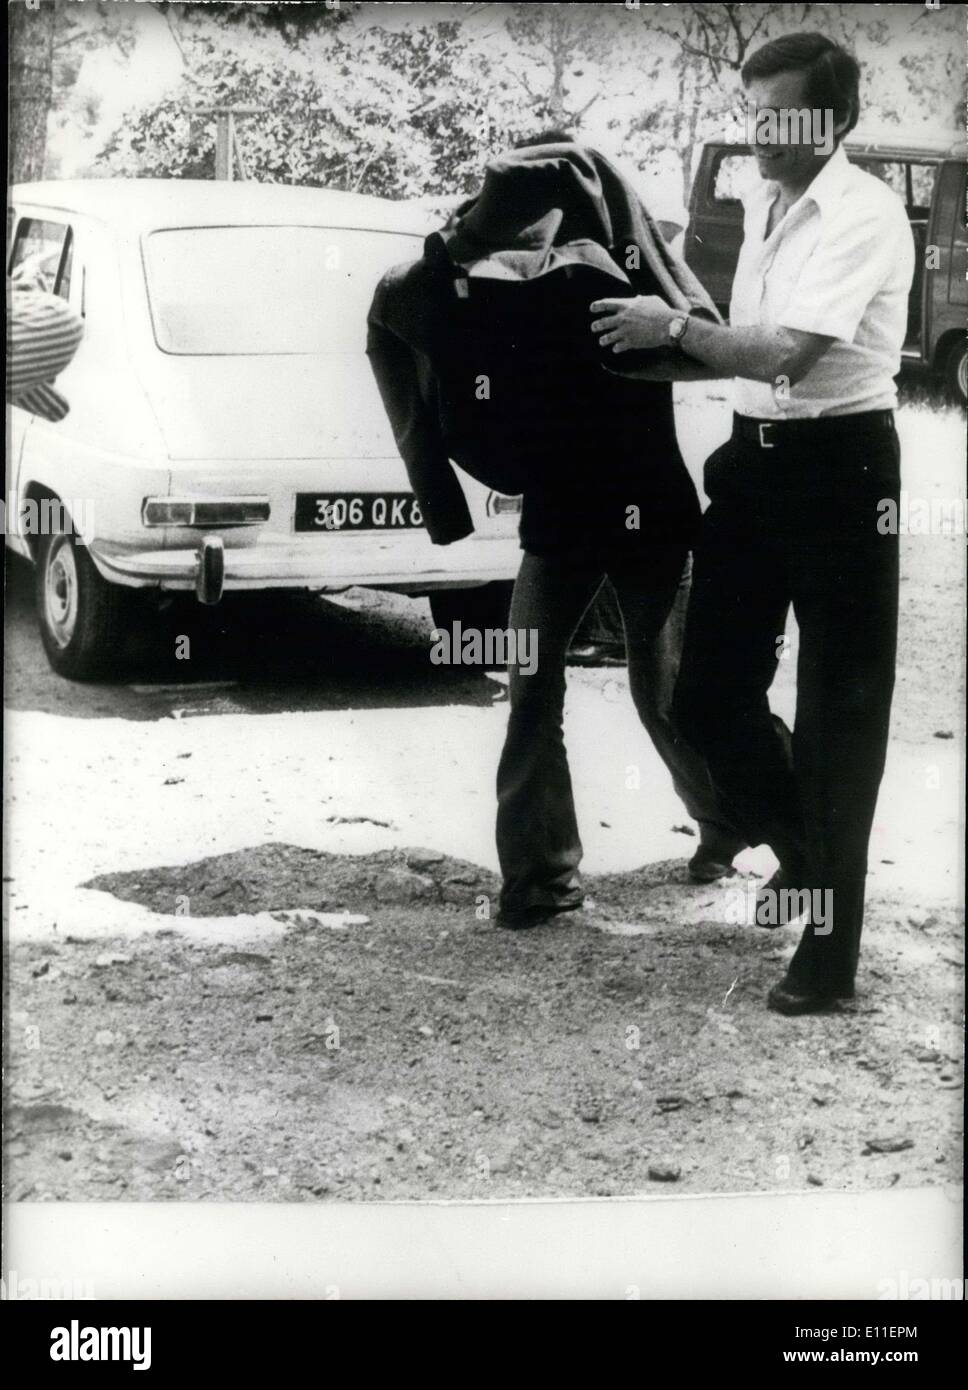 Giugno 08, 1977 - Maria-Christina von Opel si nasconde sotto una giacca dopo essere stato arrestato quando la polizia ha scoperto 1100kg di marijuana. Foto Stock